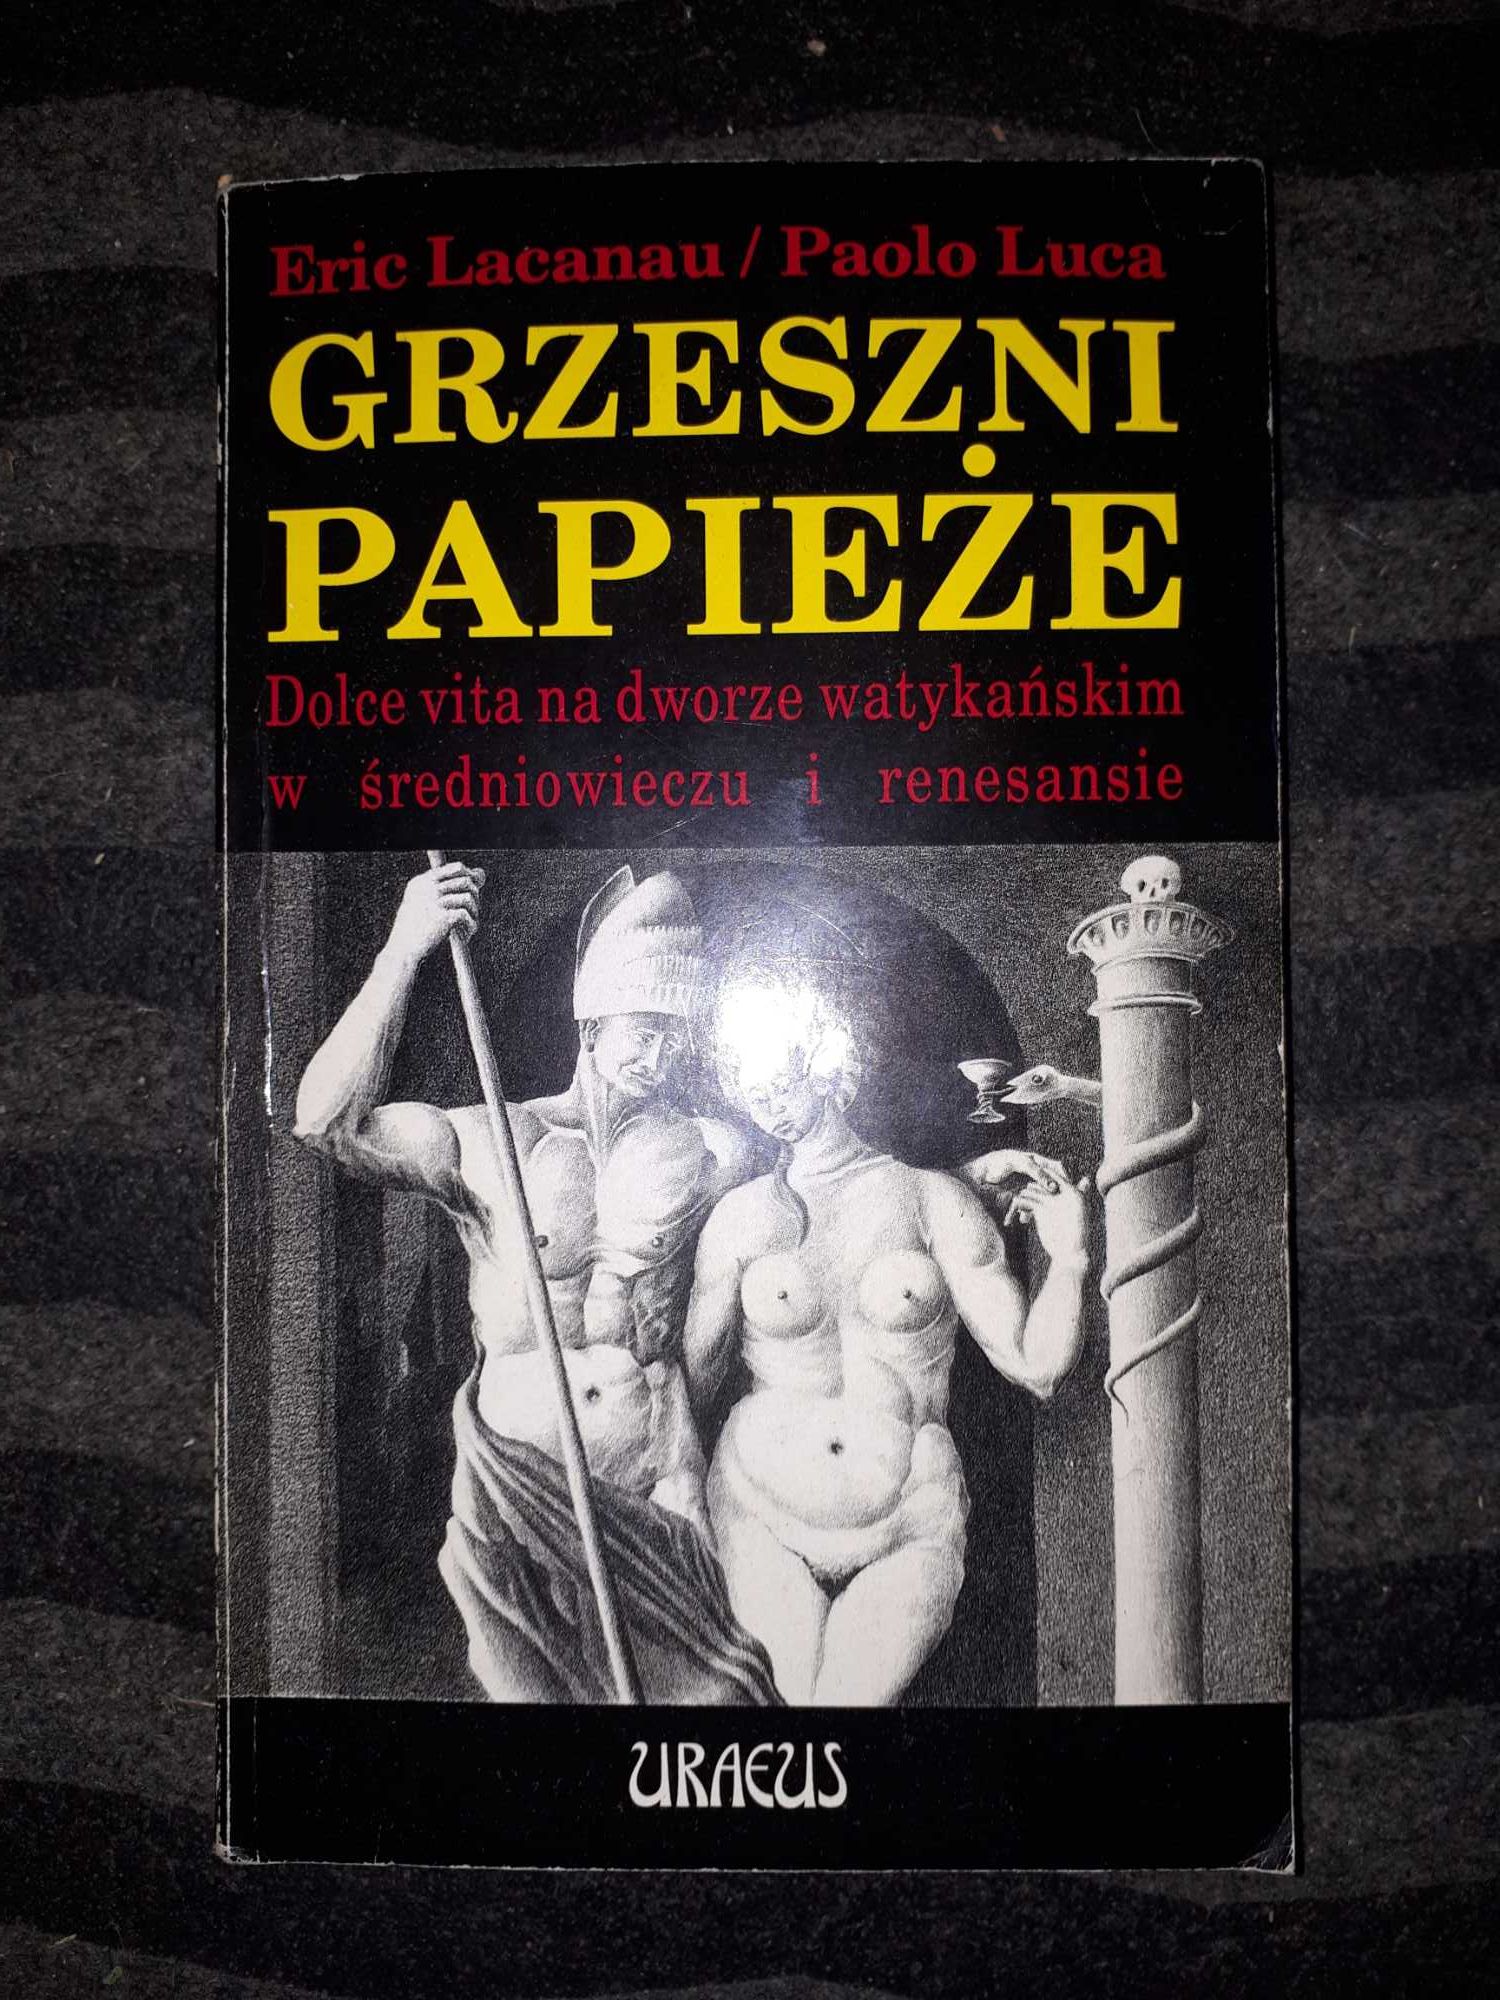 Książka Grzeszni papieże dolce vita na dworze -Eric Lacanau Paolo Luca